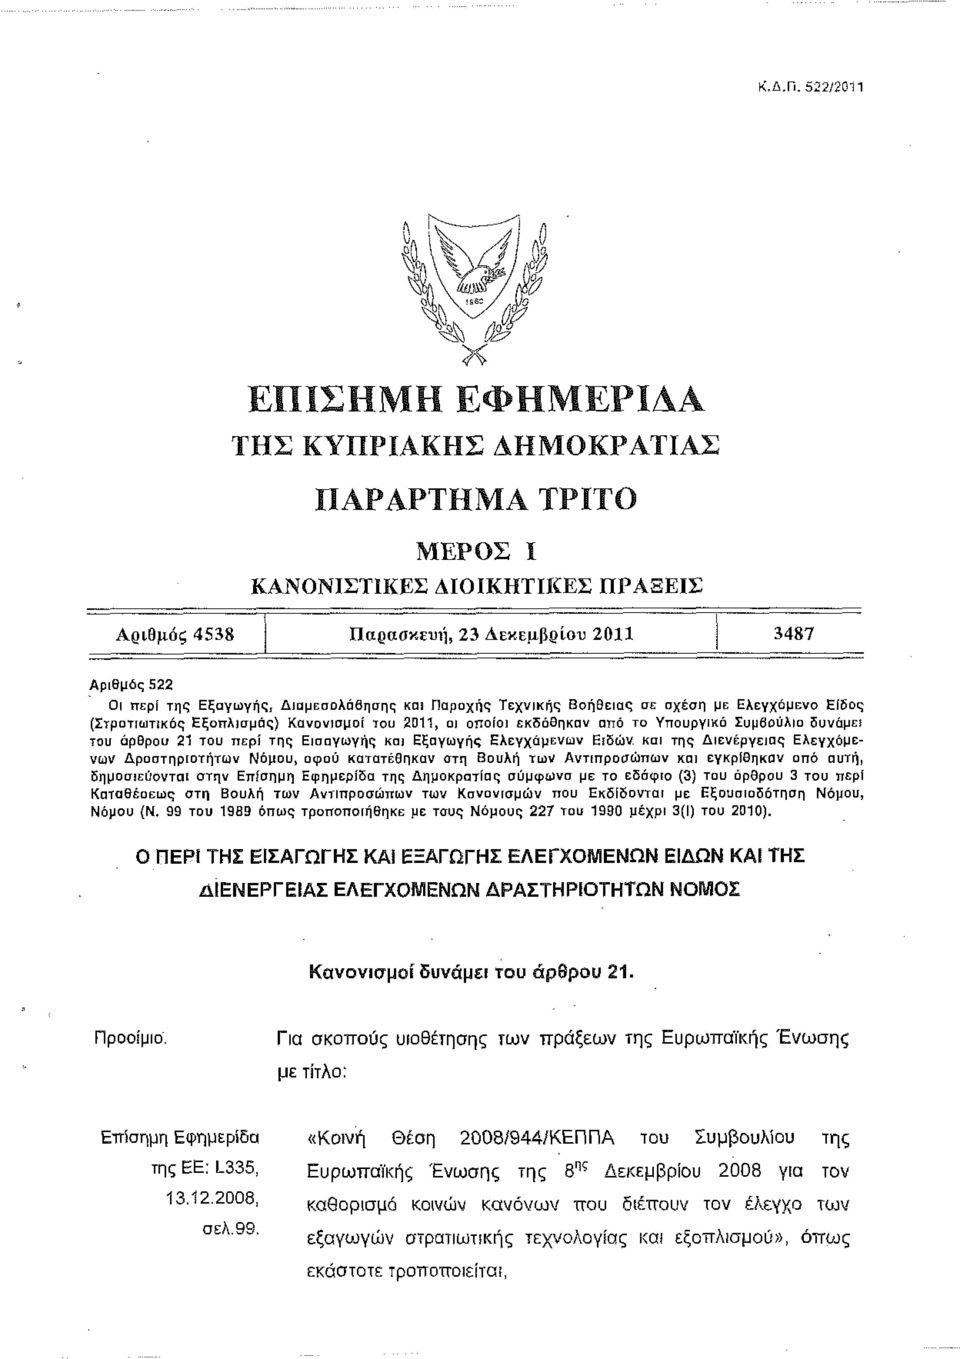 (Στρατιωτικός Εξοπλισμός) Κανονισμοί του 2011, οι οποίοι εκδόθηκαν από το Υπουργικό Συμβούλιο δυνάμει του άρθρου 21 του περί της Εισαγωγής και Εξαγωγής Ελεγχόμενων Ειδών και της Διενέργειας